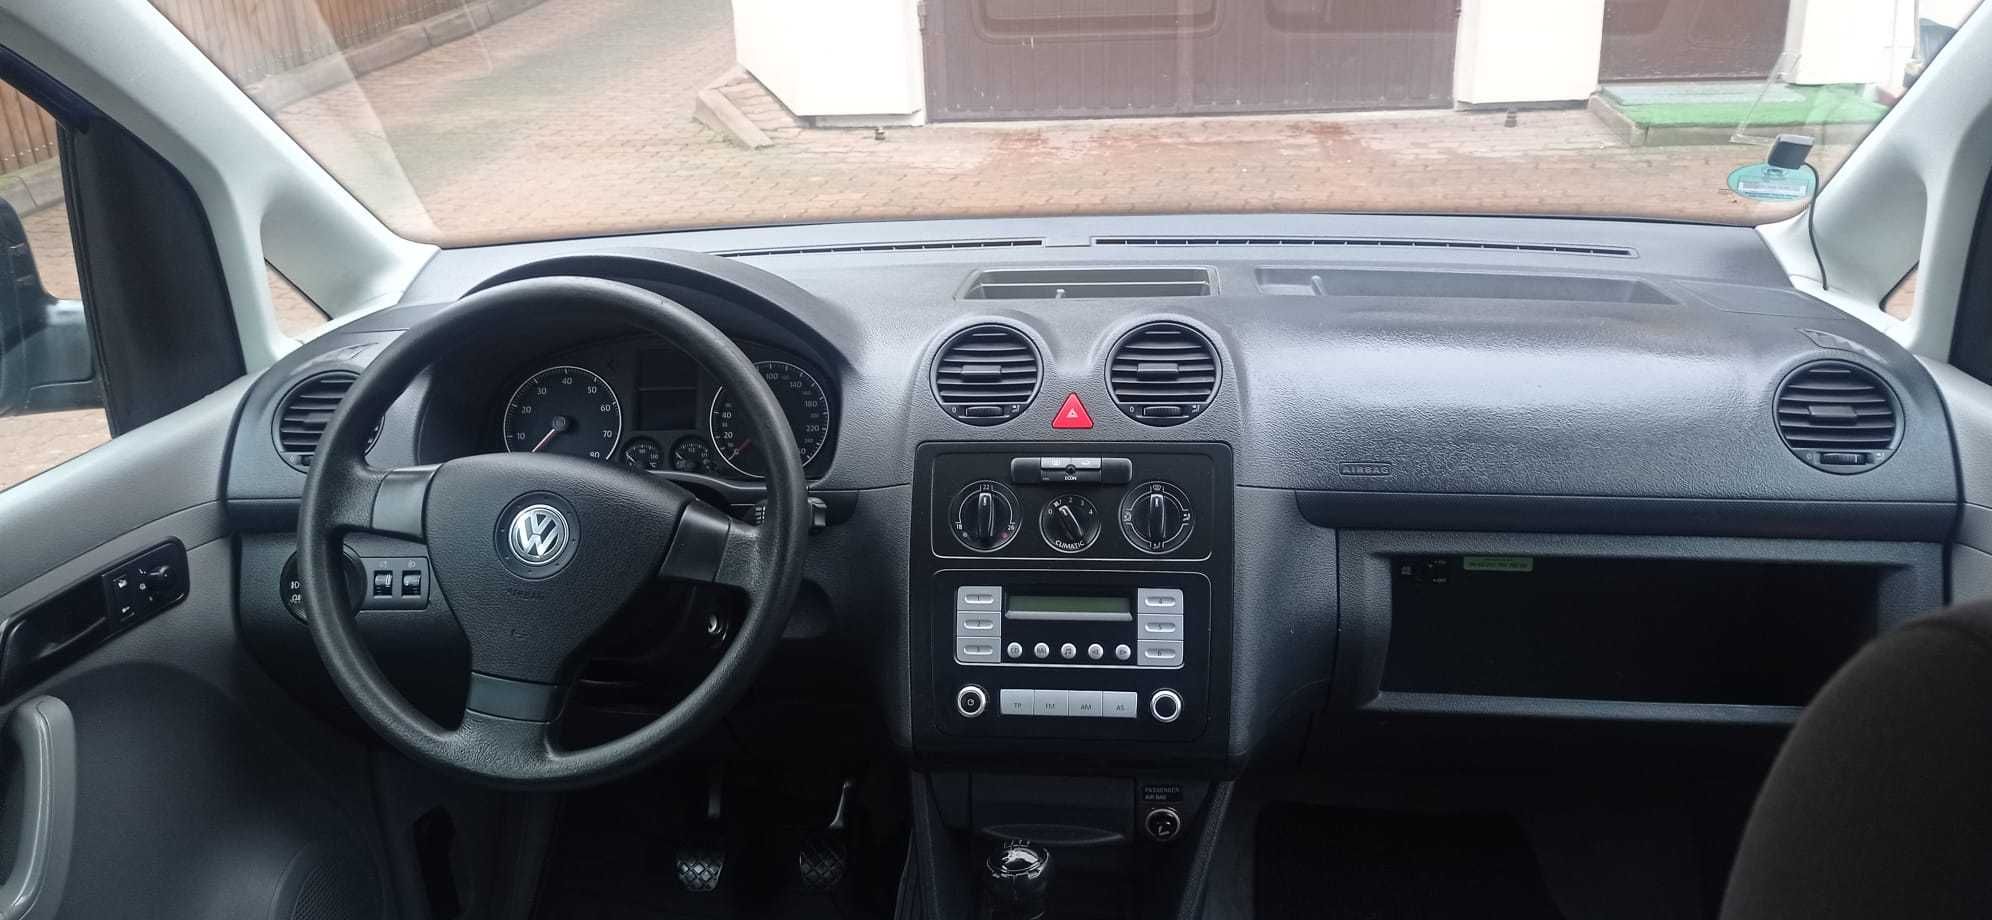 Sprzedam Volkswagen Caddy 2006 rok 2.0 benzyna Klima ZAMIANA